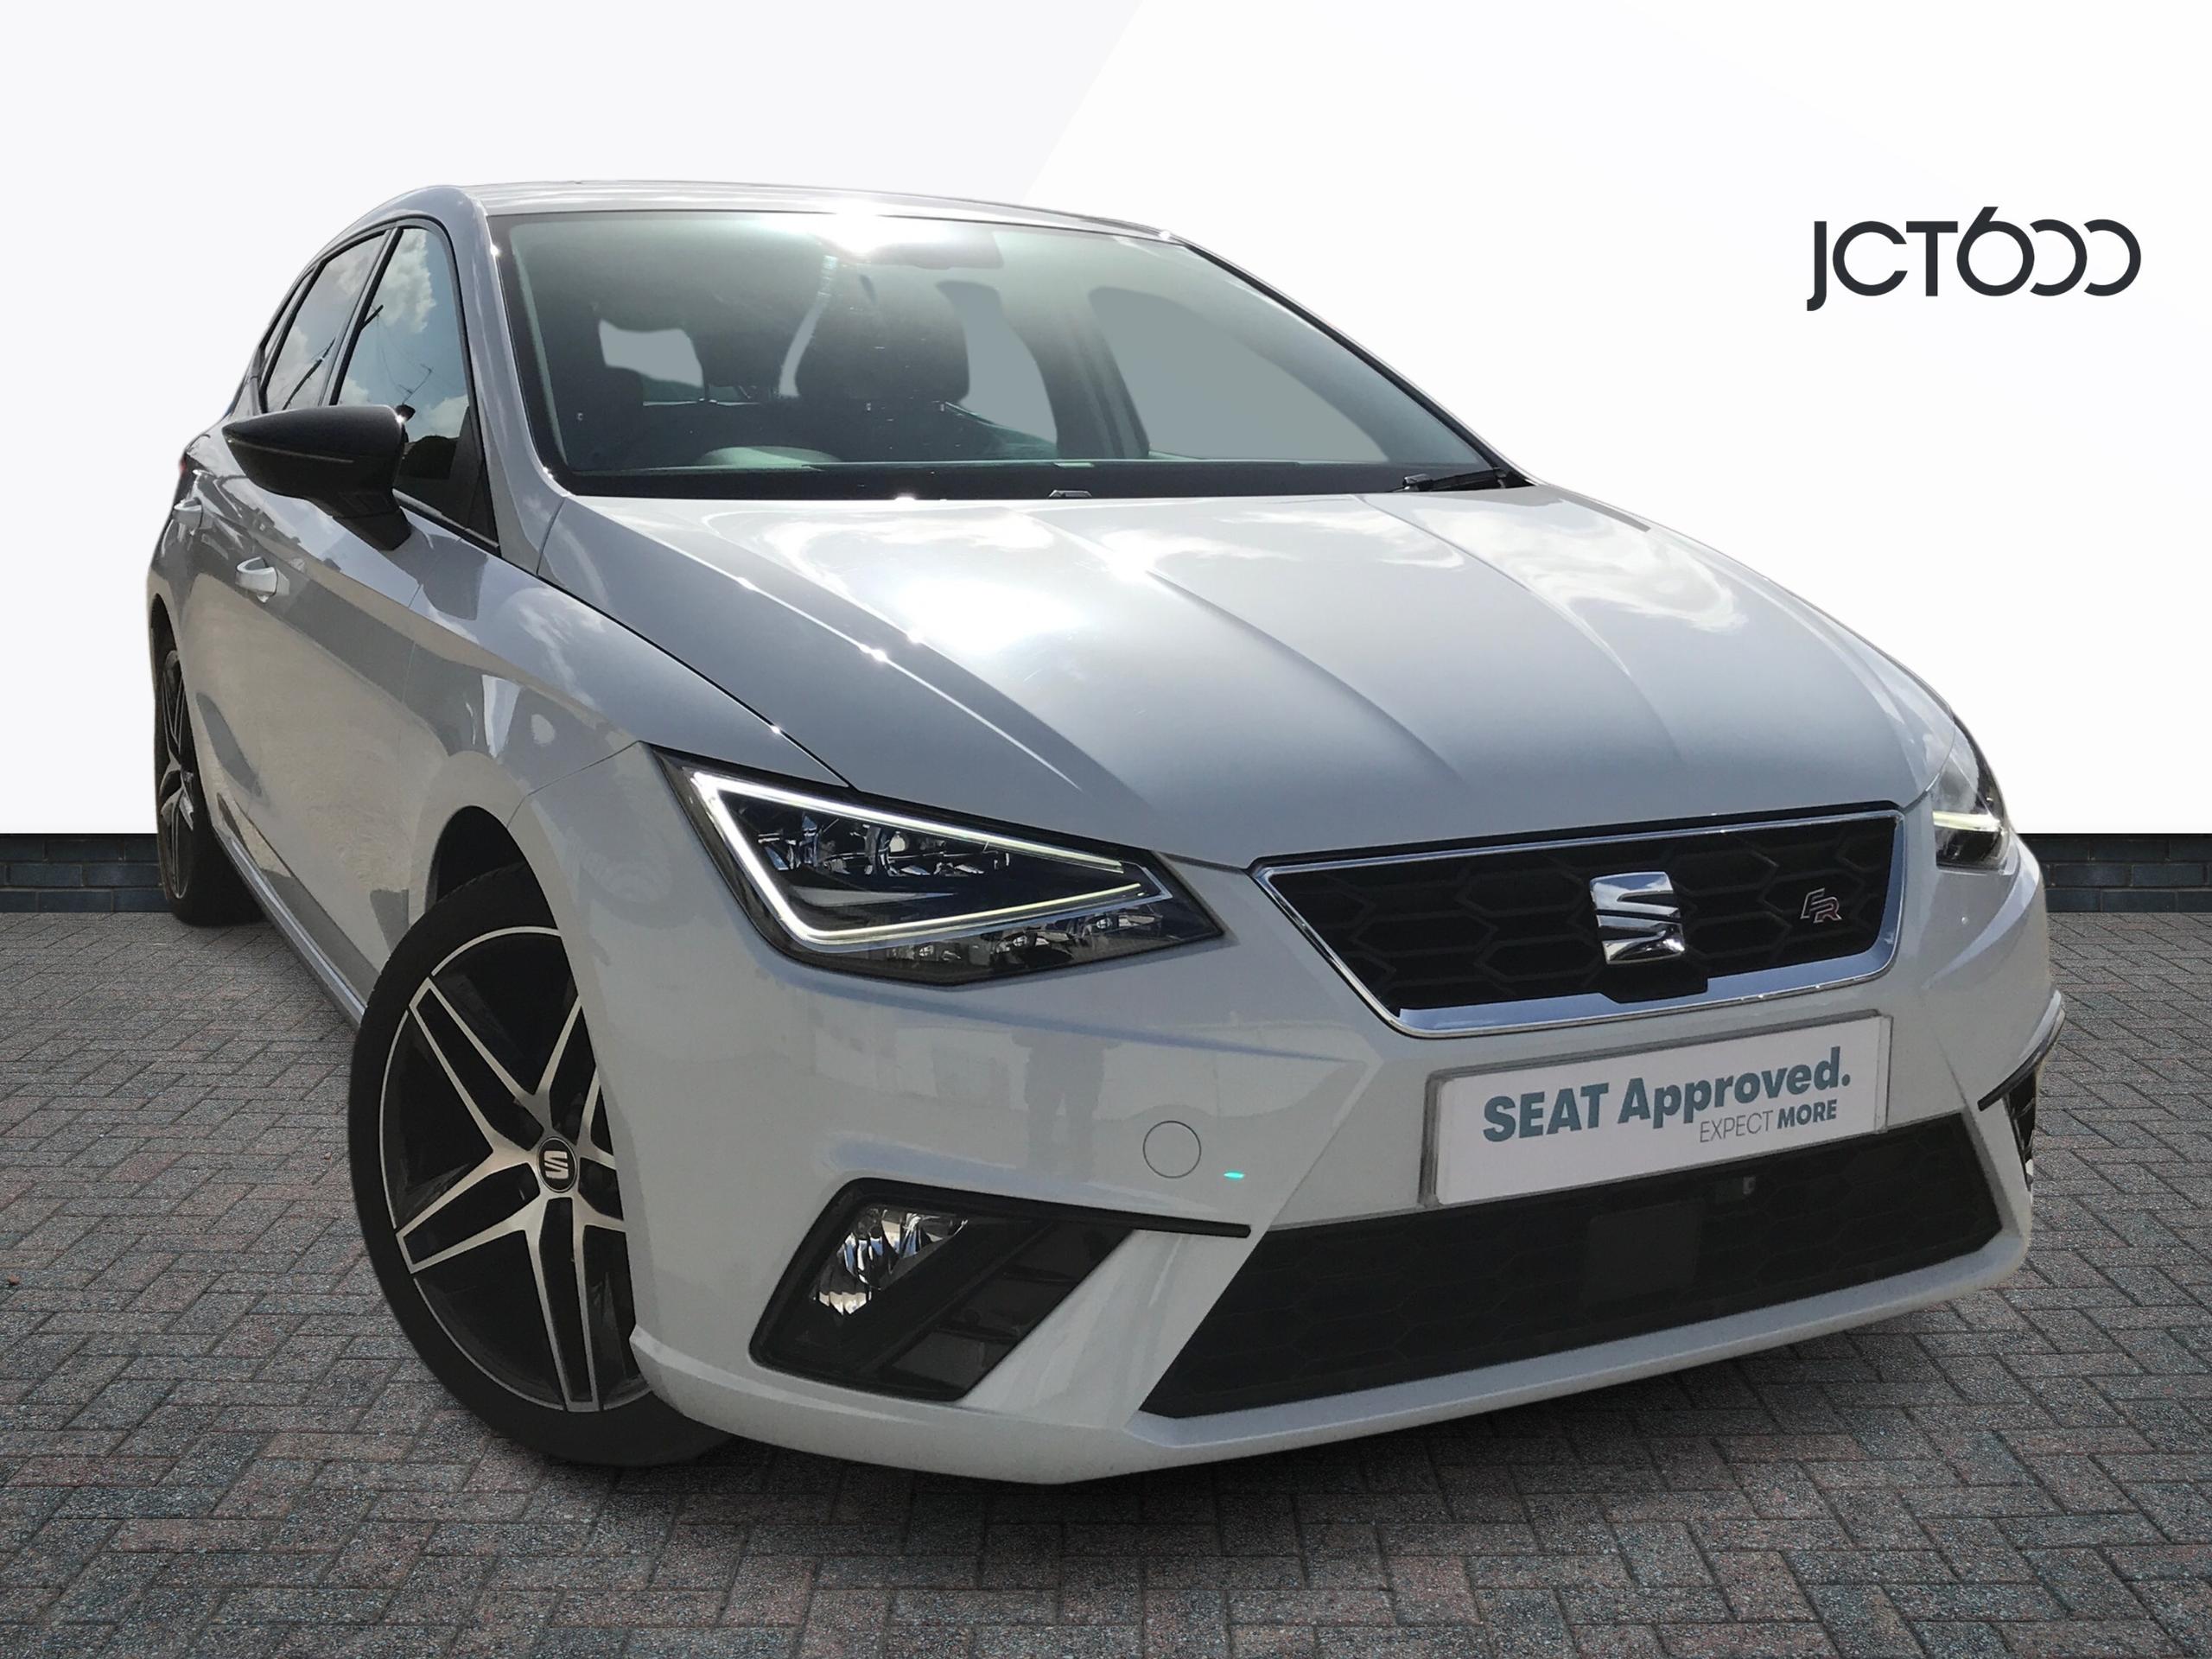 SEAT Ibiza FR Sport 5dr £15,557 13,641 miles WHITE | JCT600